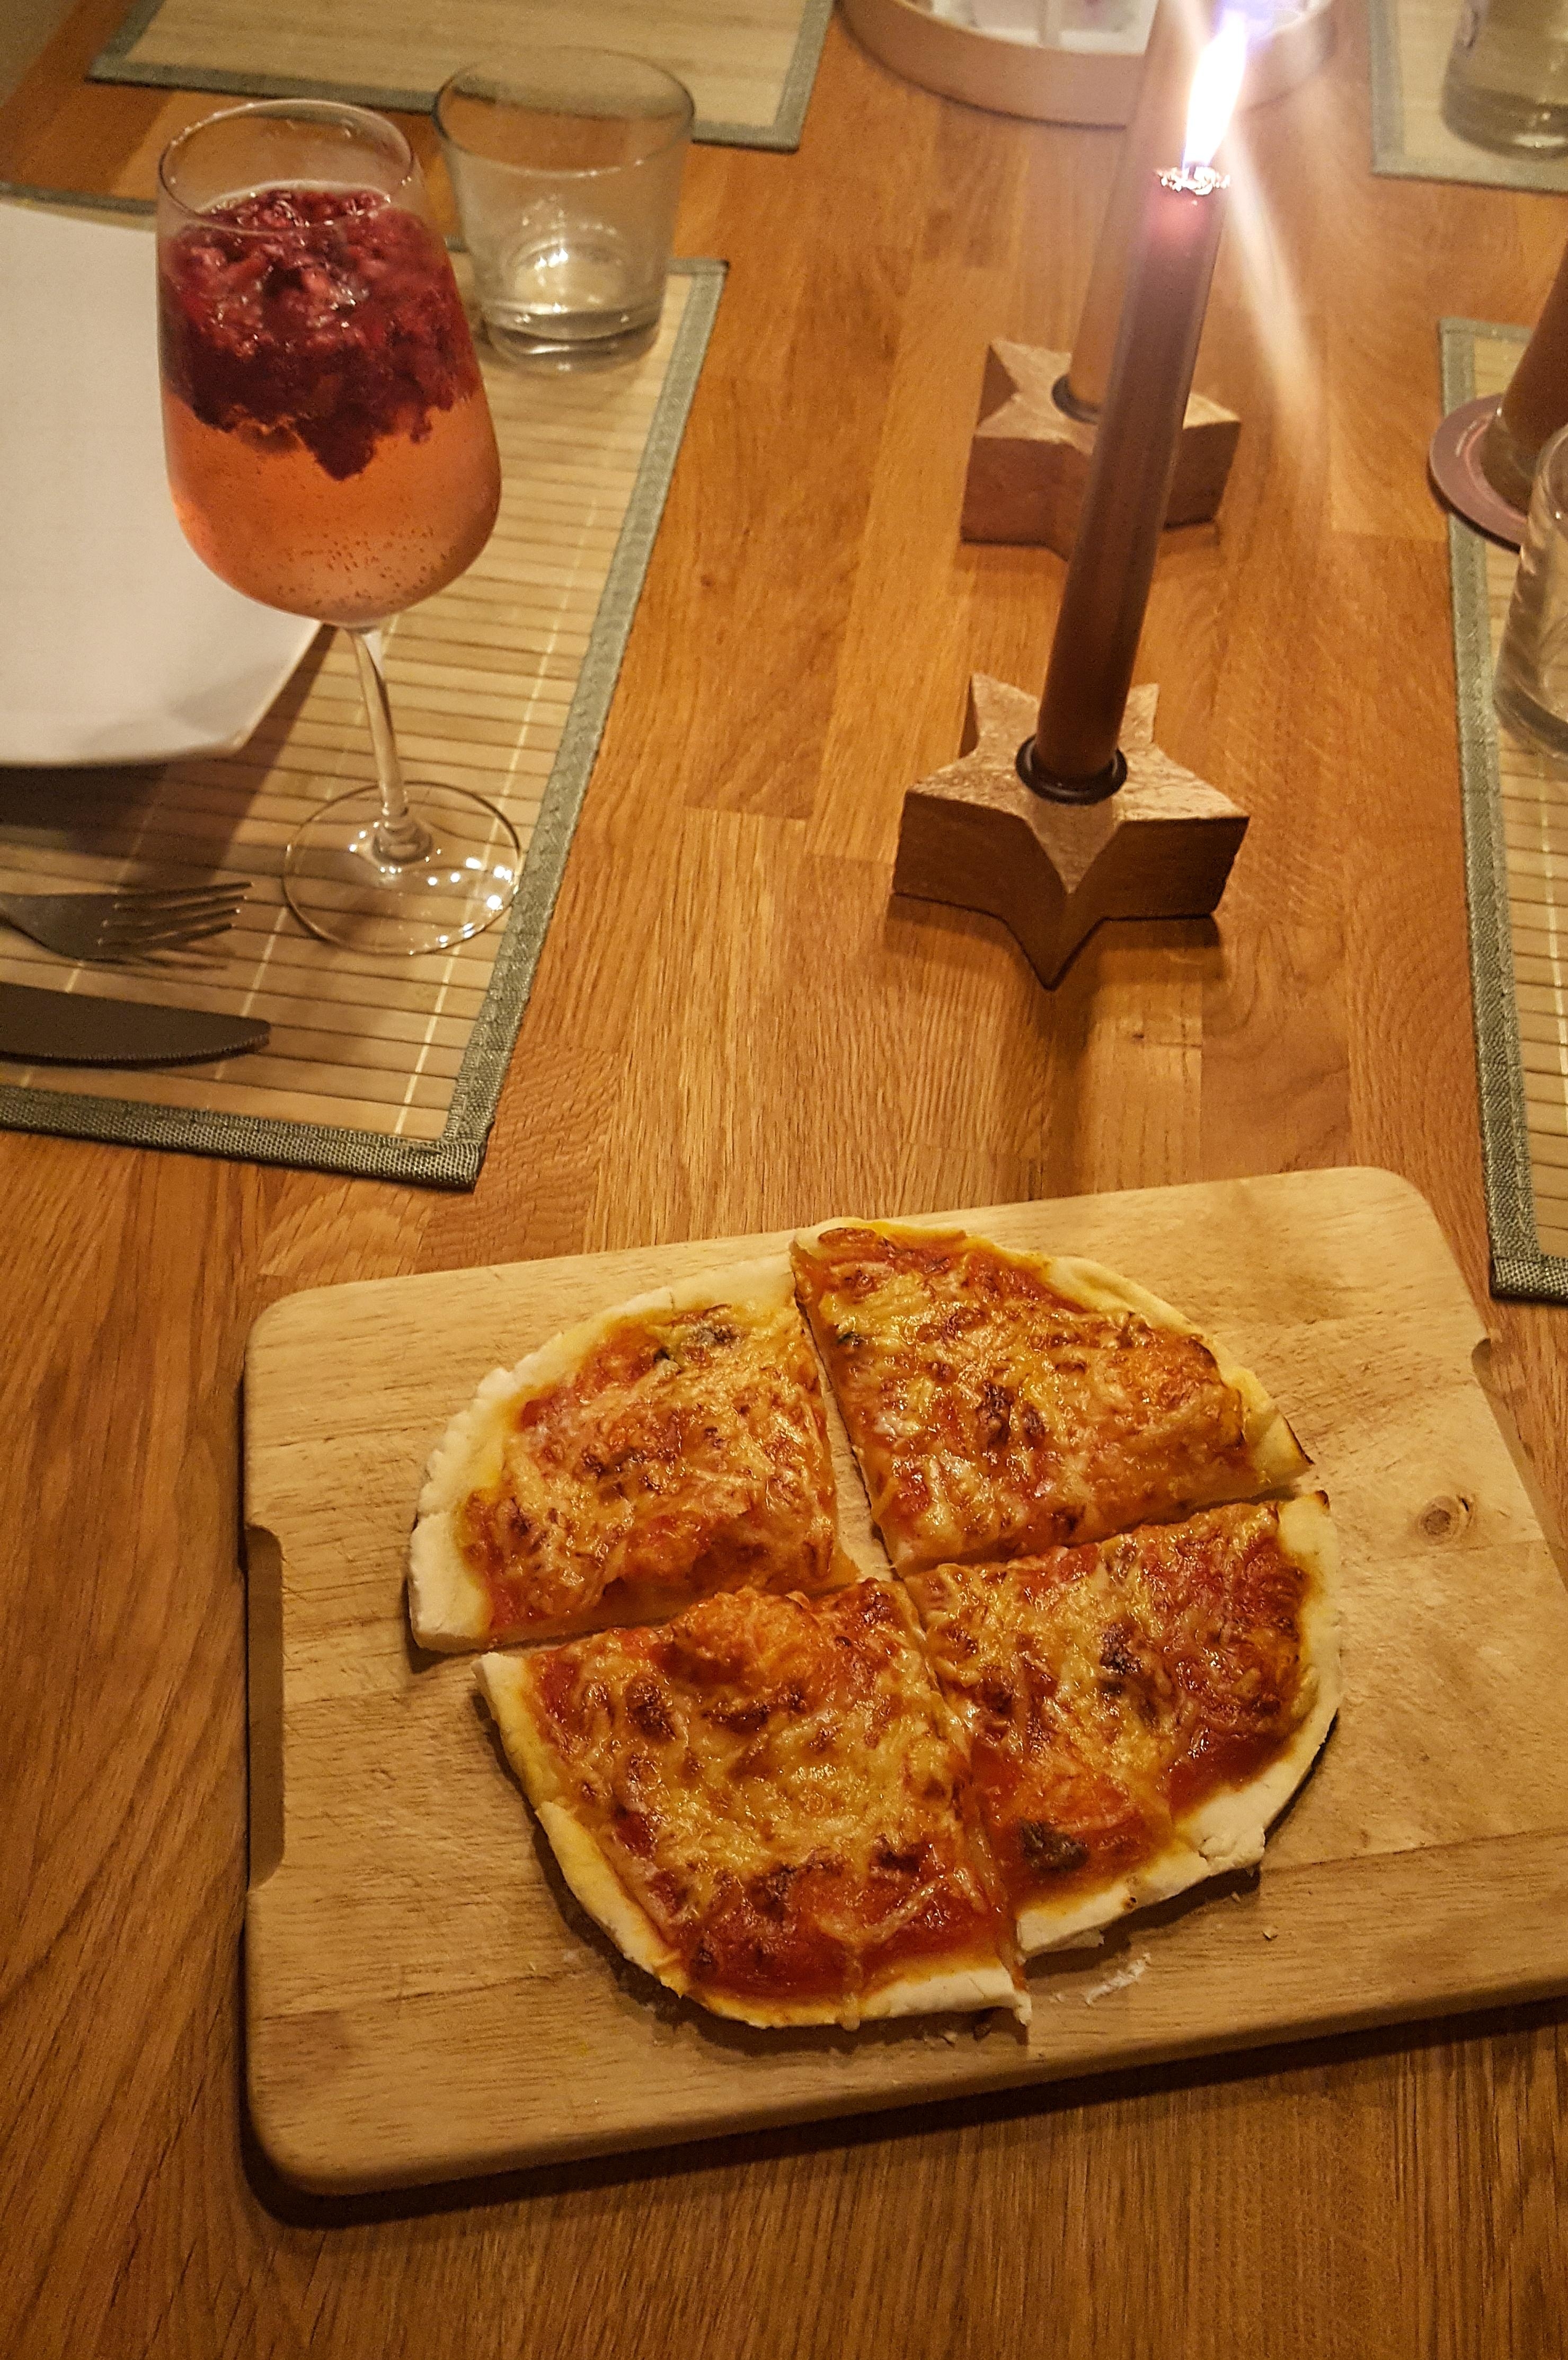 Neues Corona- Projekt: Pizza wie beim Italiener! Heute haben wir unseren Pizzastein eingeweiht :-) #glutenfreiepizza